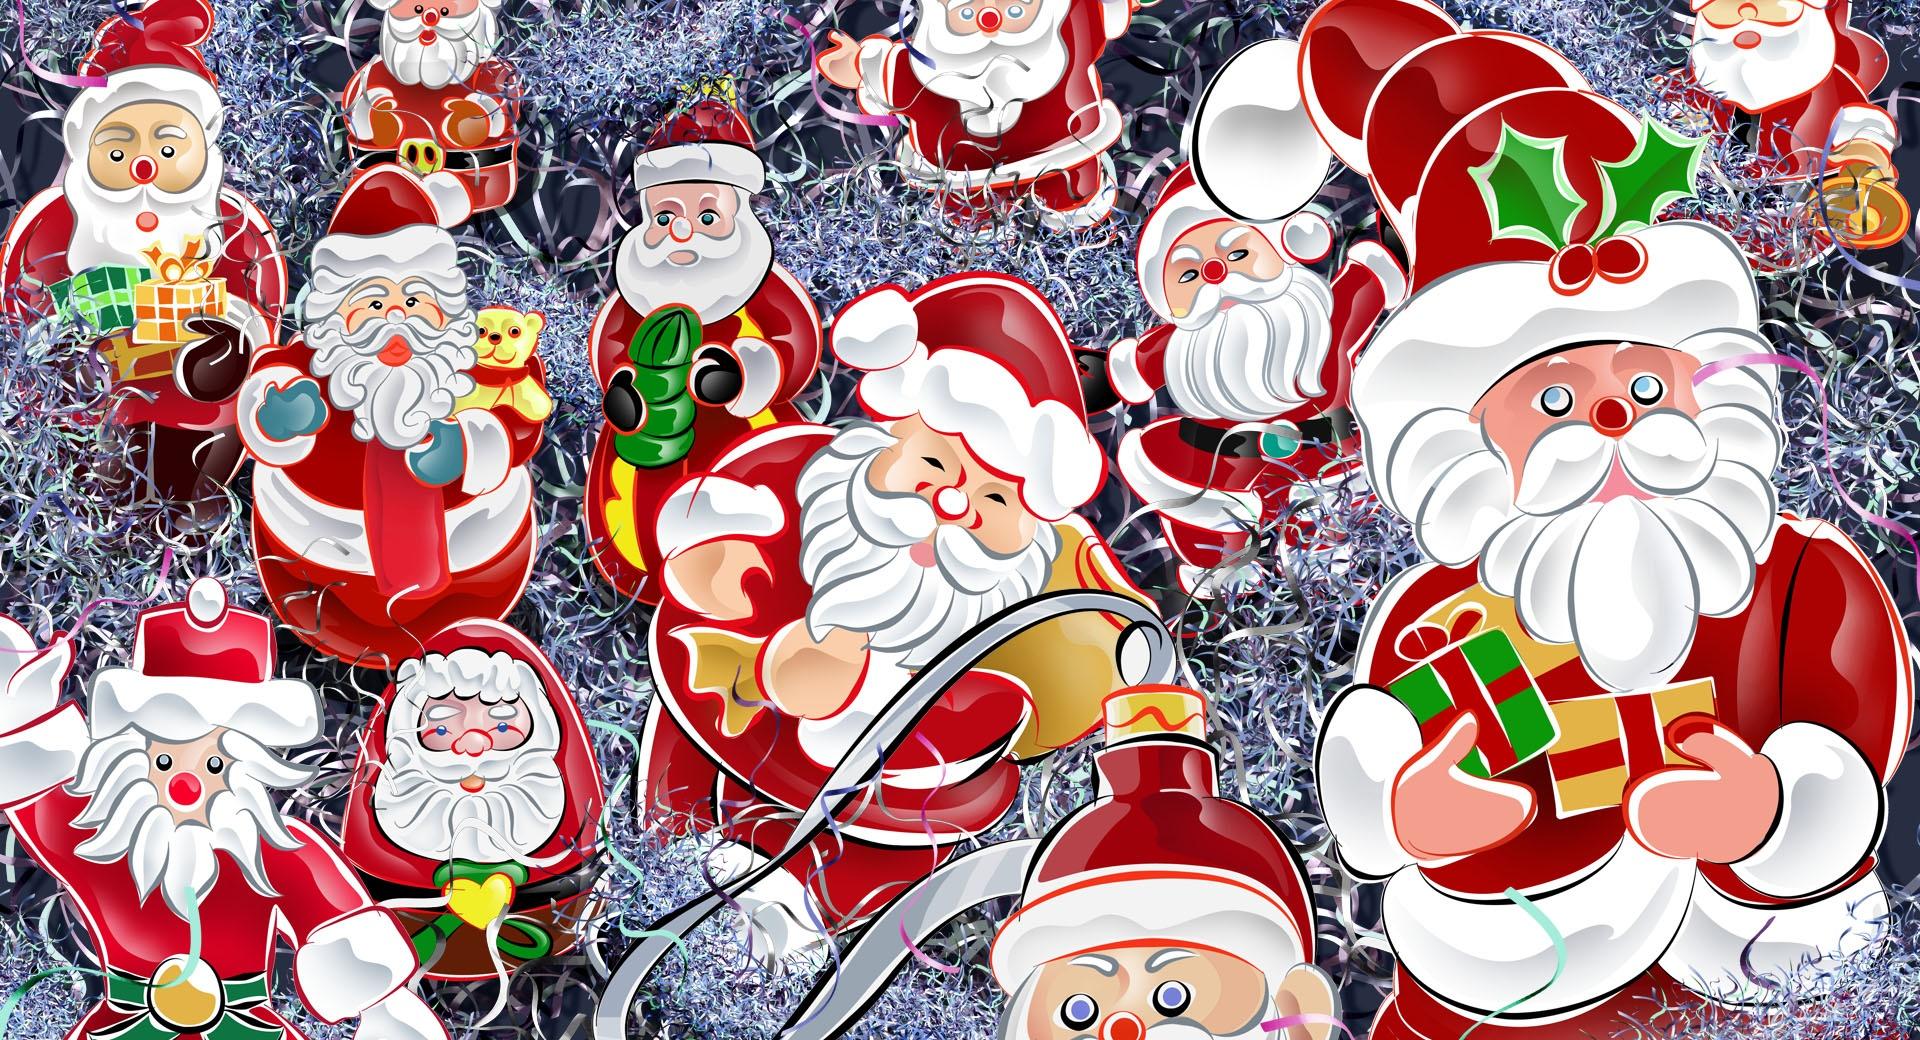 Lots Of Santas Christmas at 2048 x 2048 iPad size wallpapers HD quality